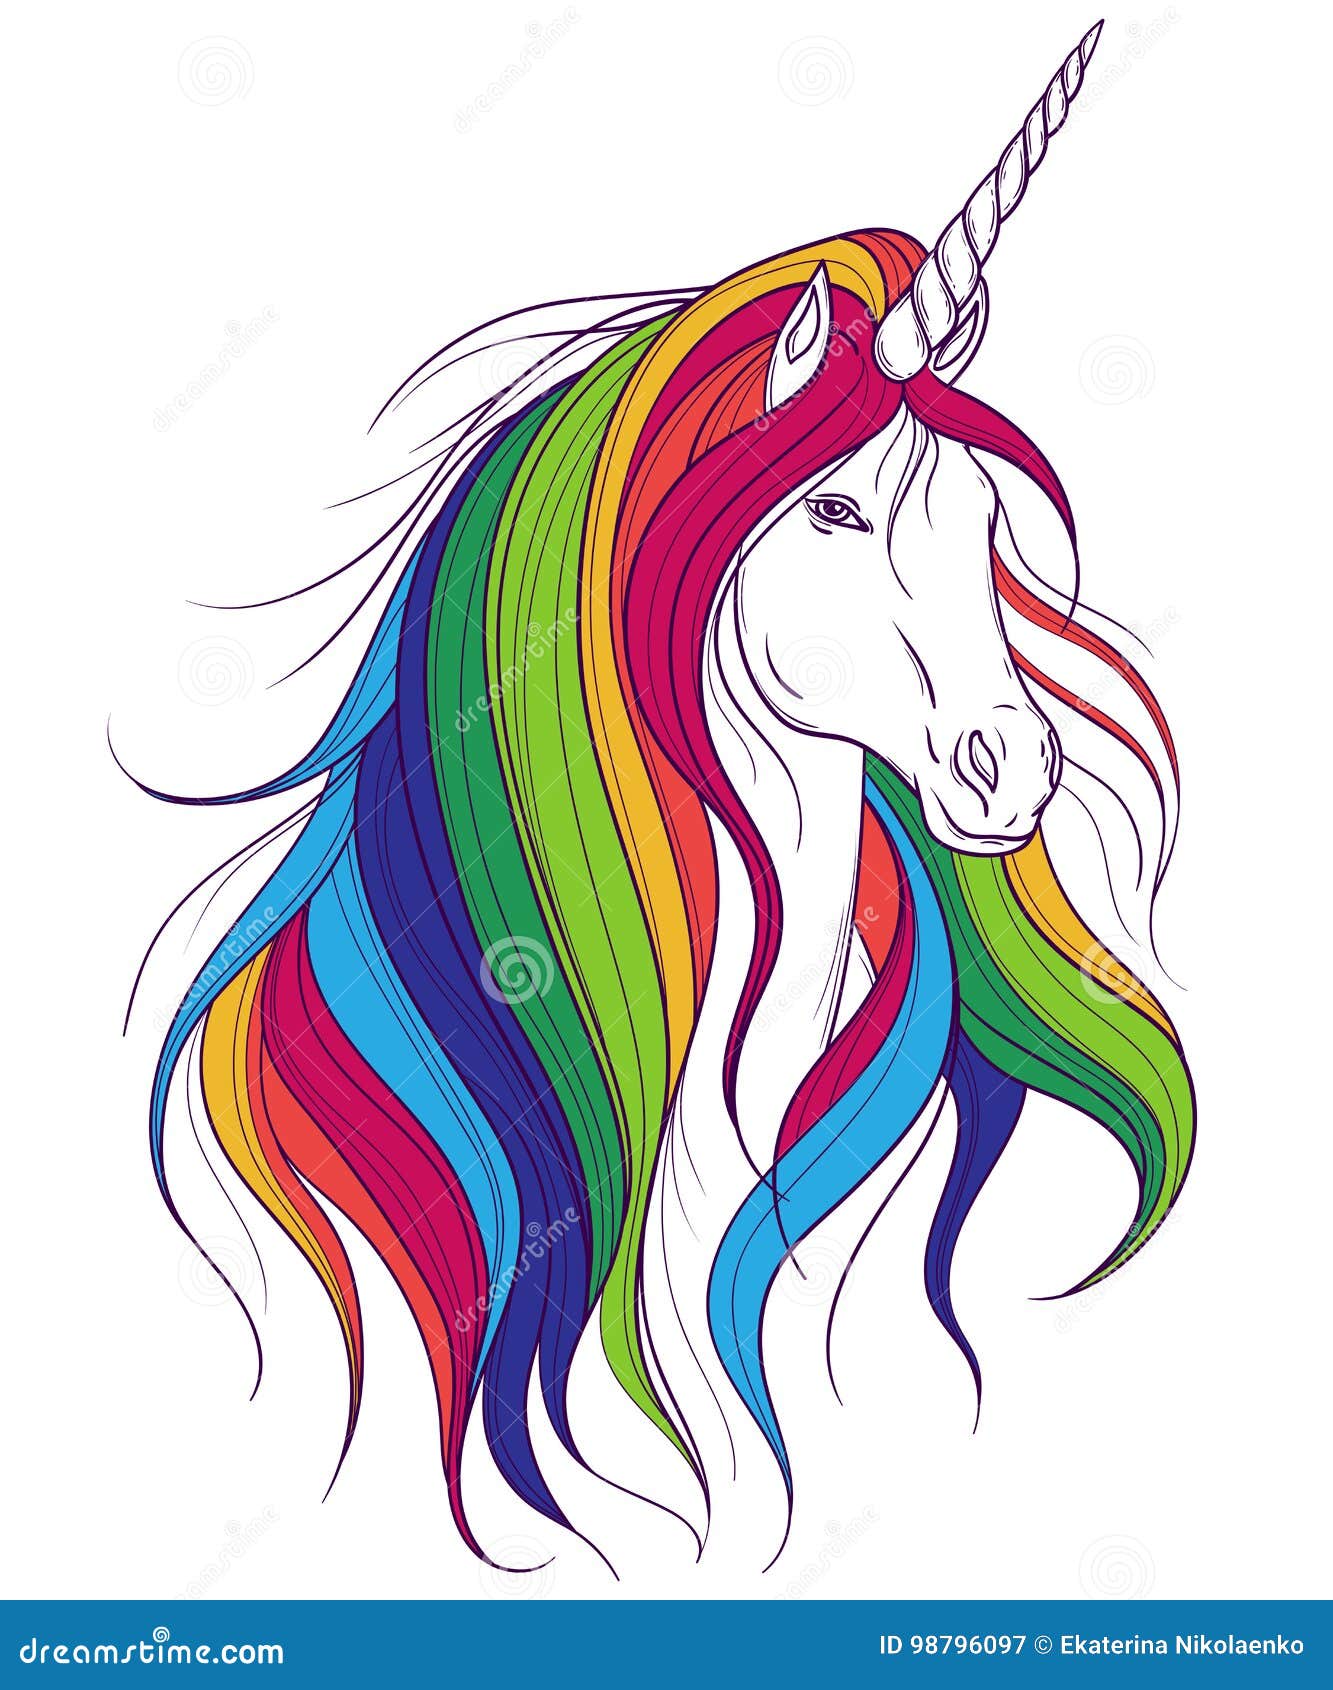 unicorn with rainbow mane on white background.